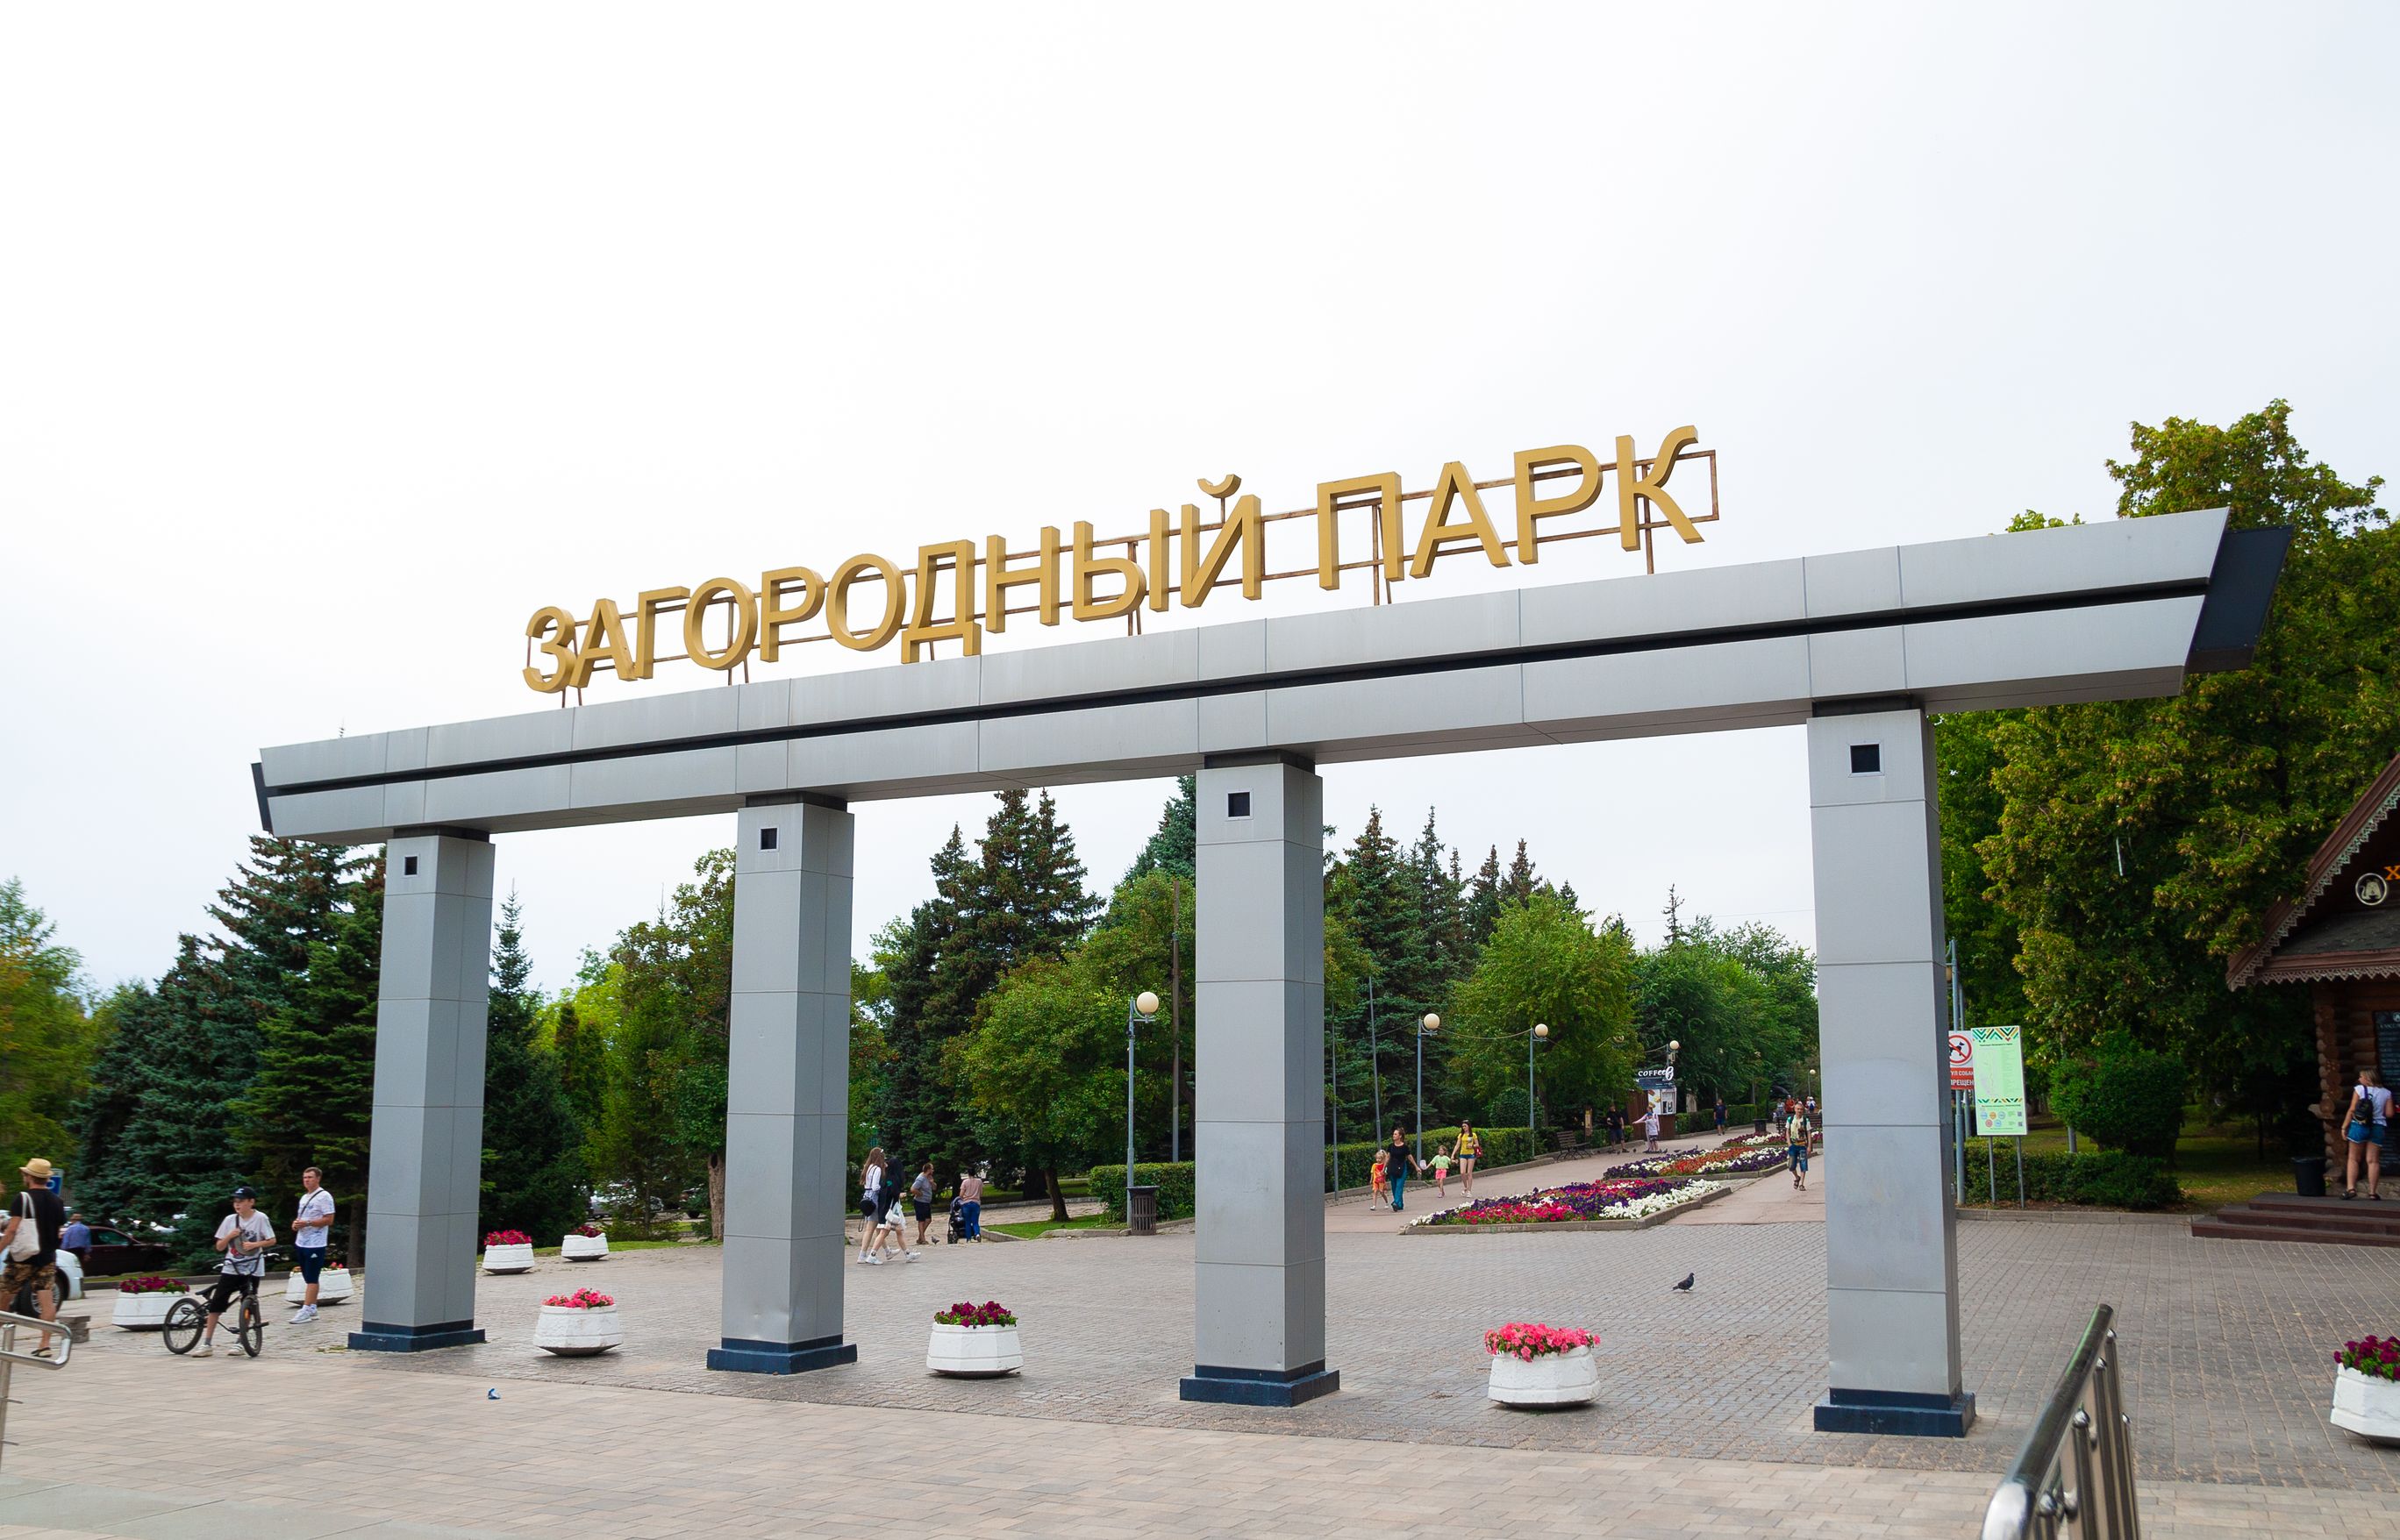 Что нас ждет в новом Центральном Парке Ташкента? — Афиша Ташкента